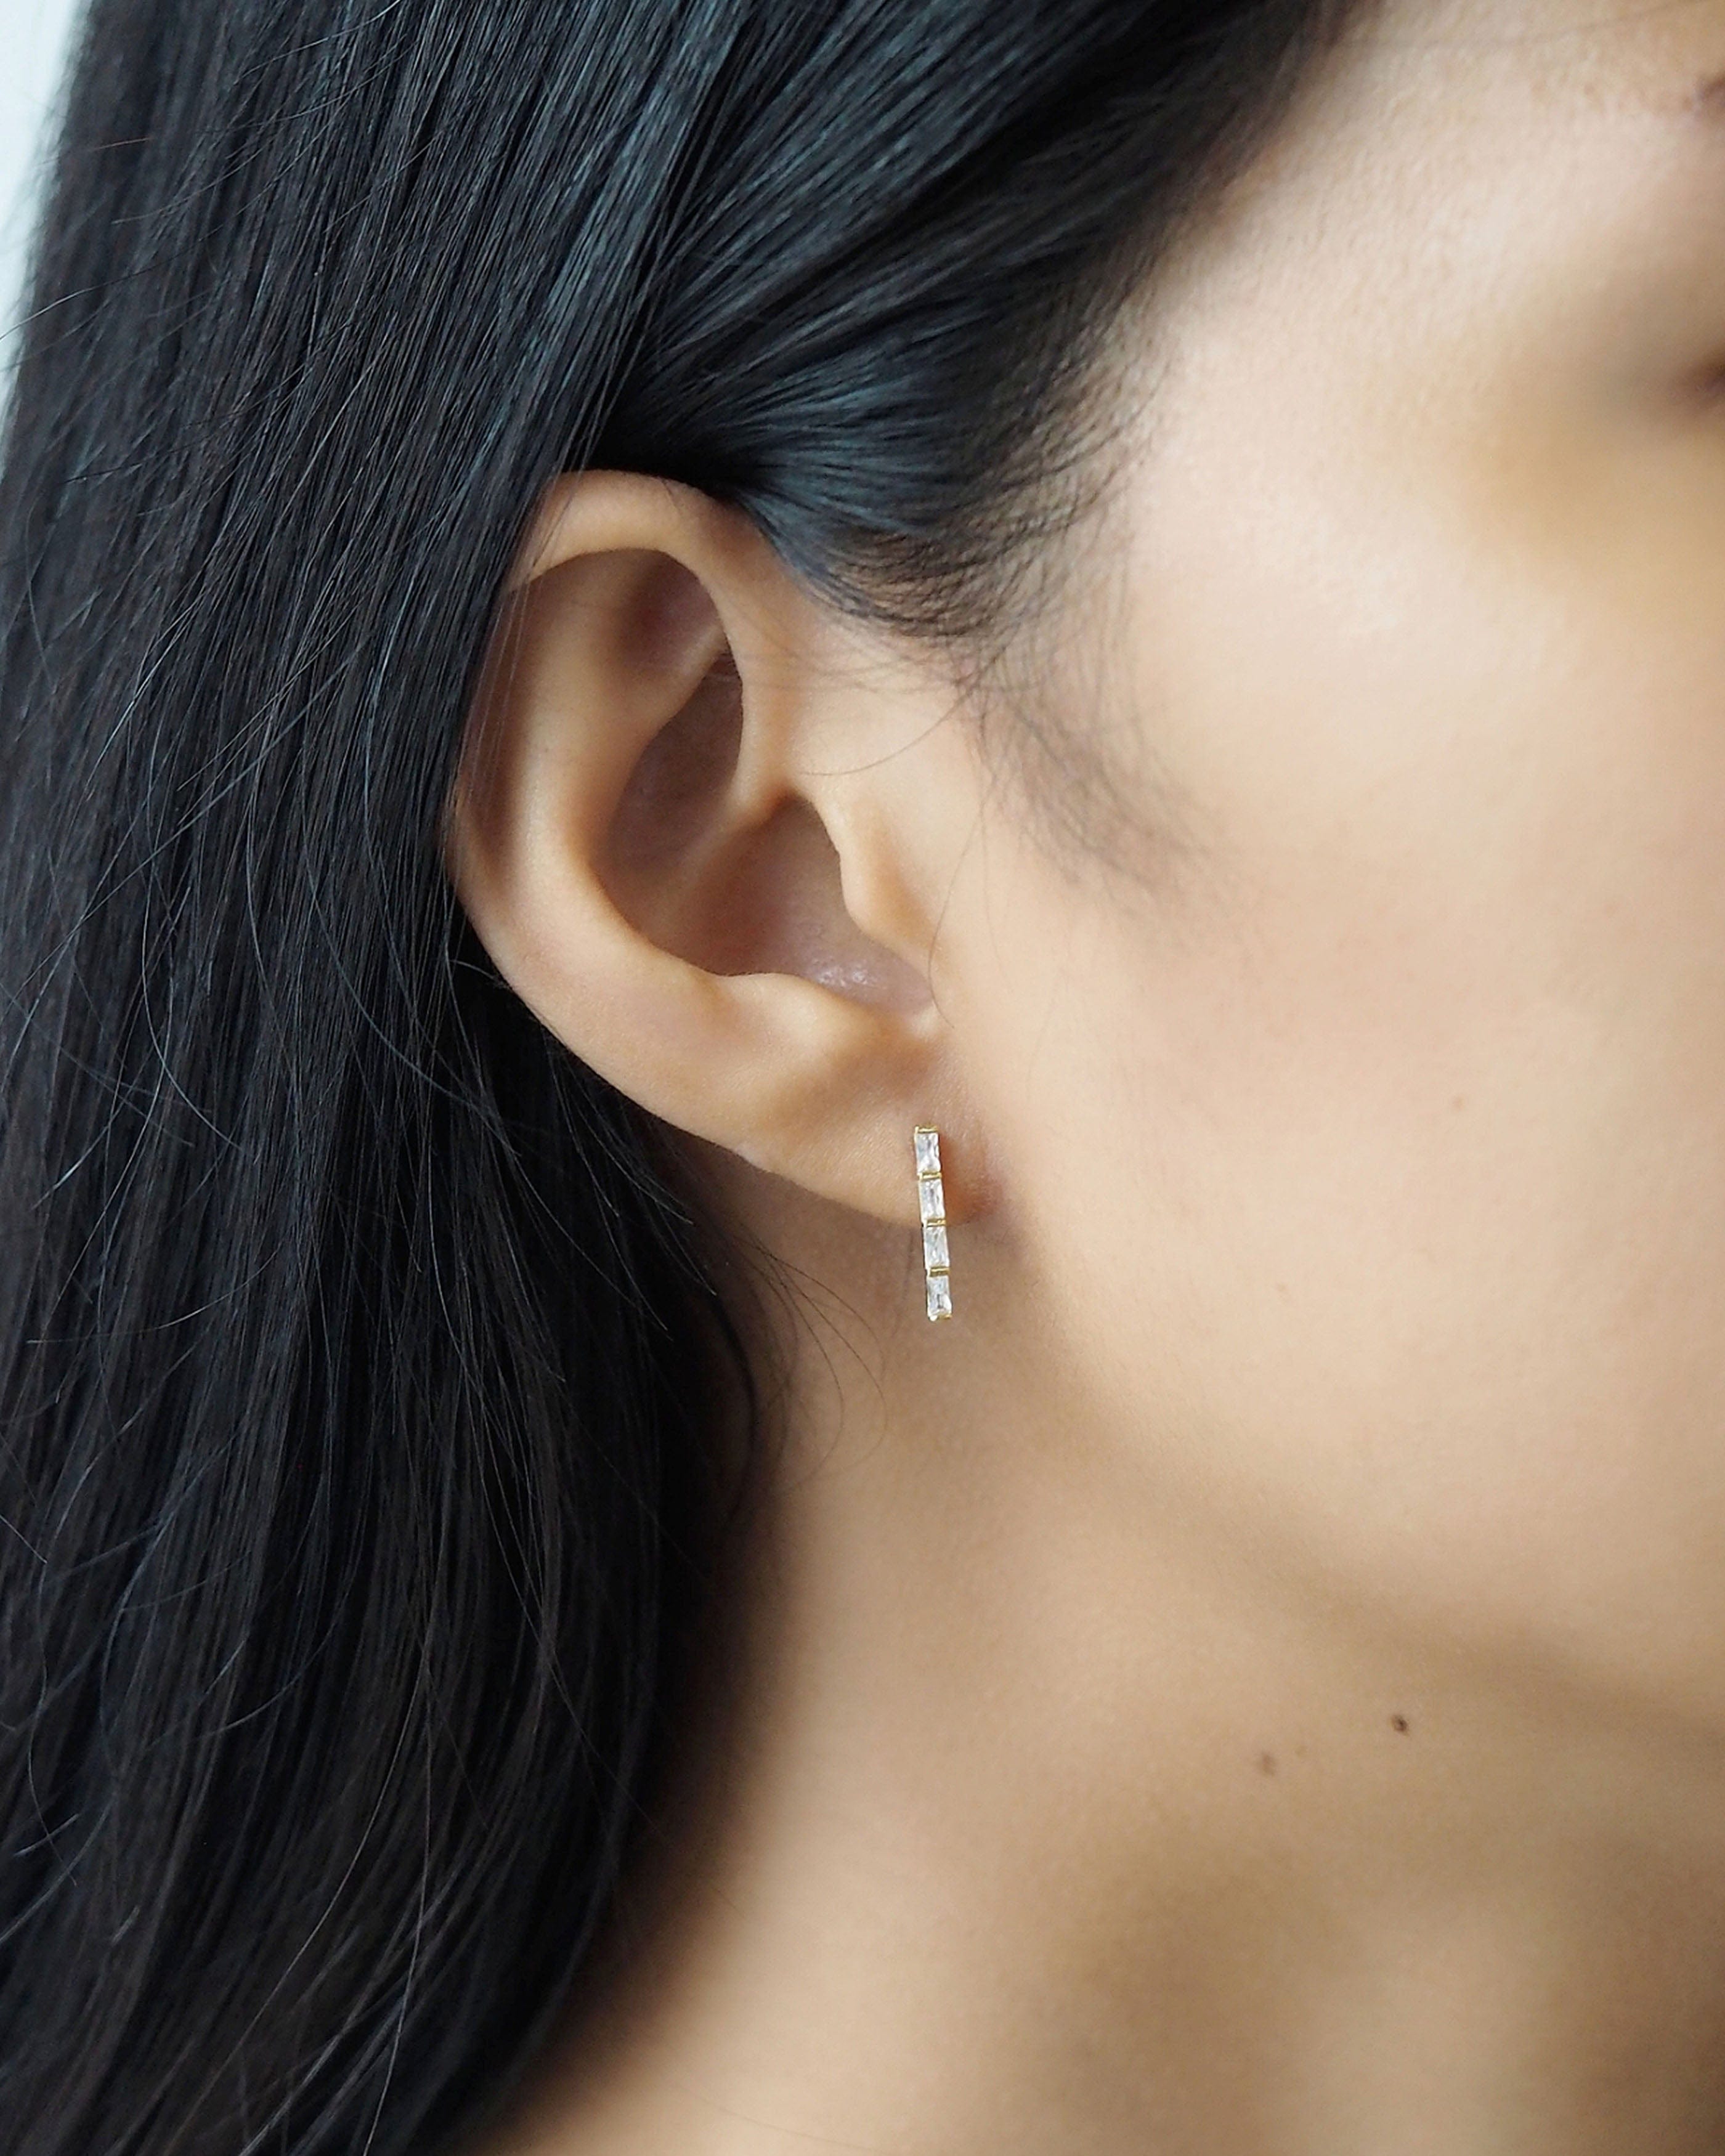 TAI JEWELRY Earrings Linear Baguette Stud